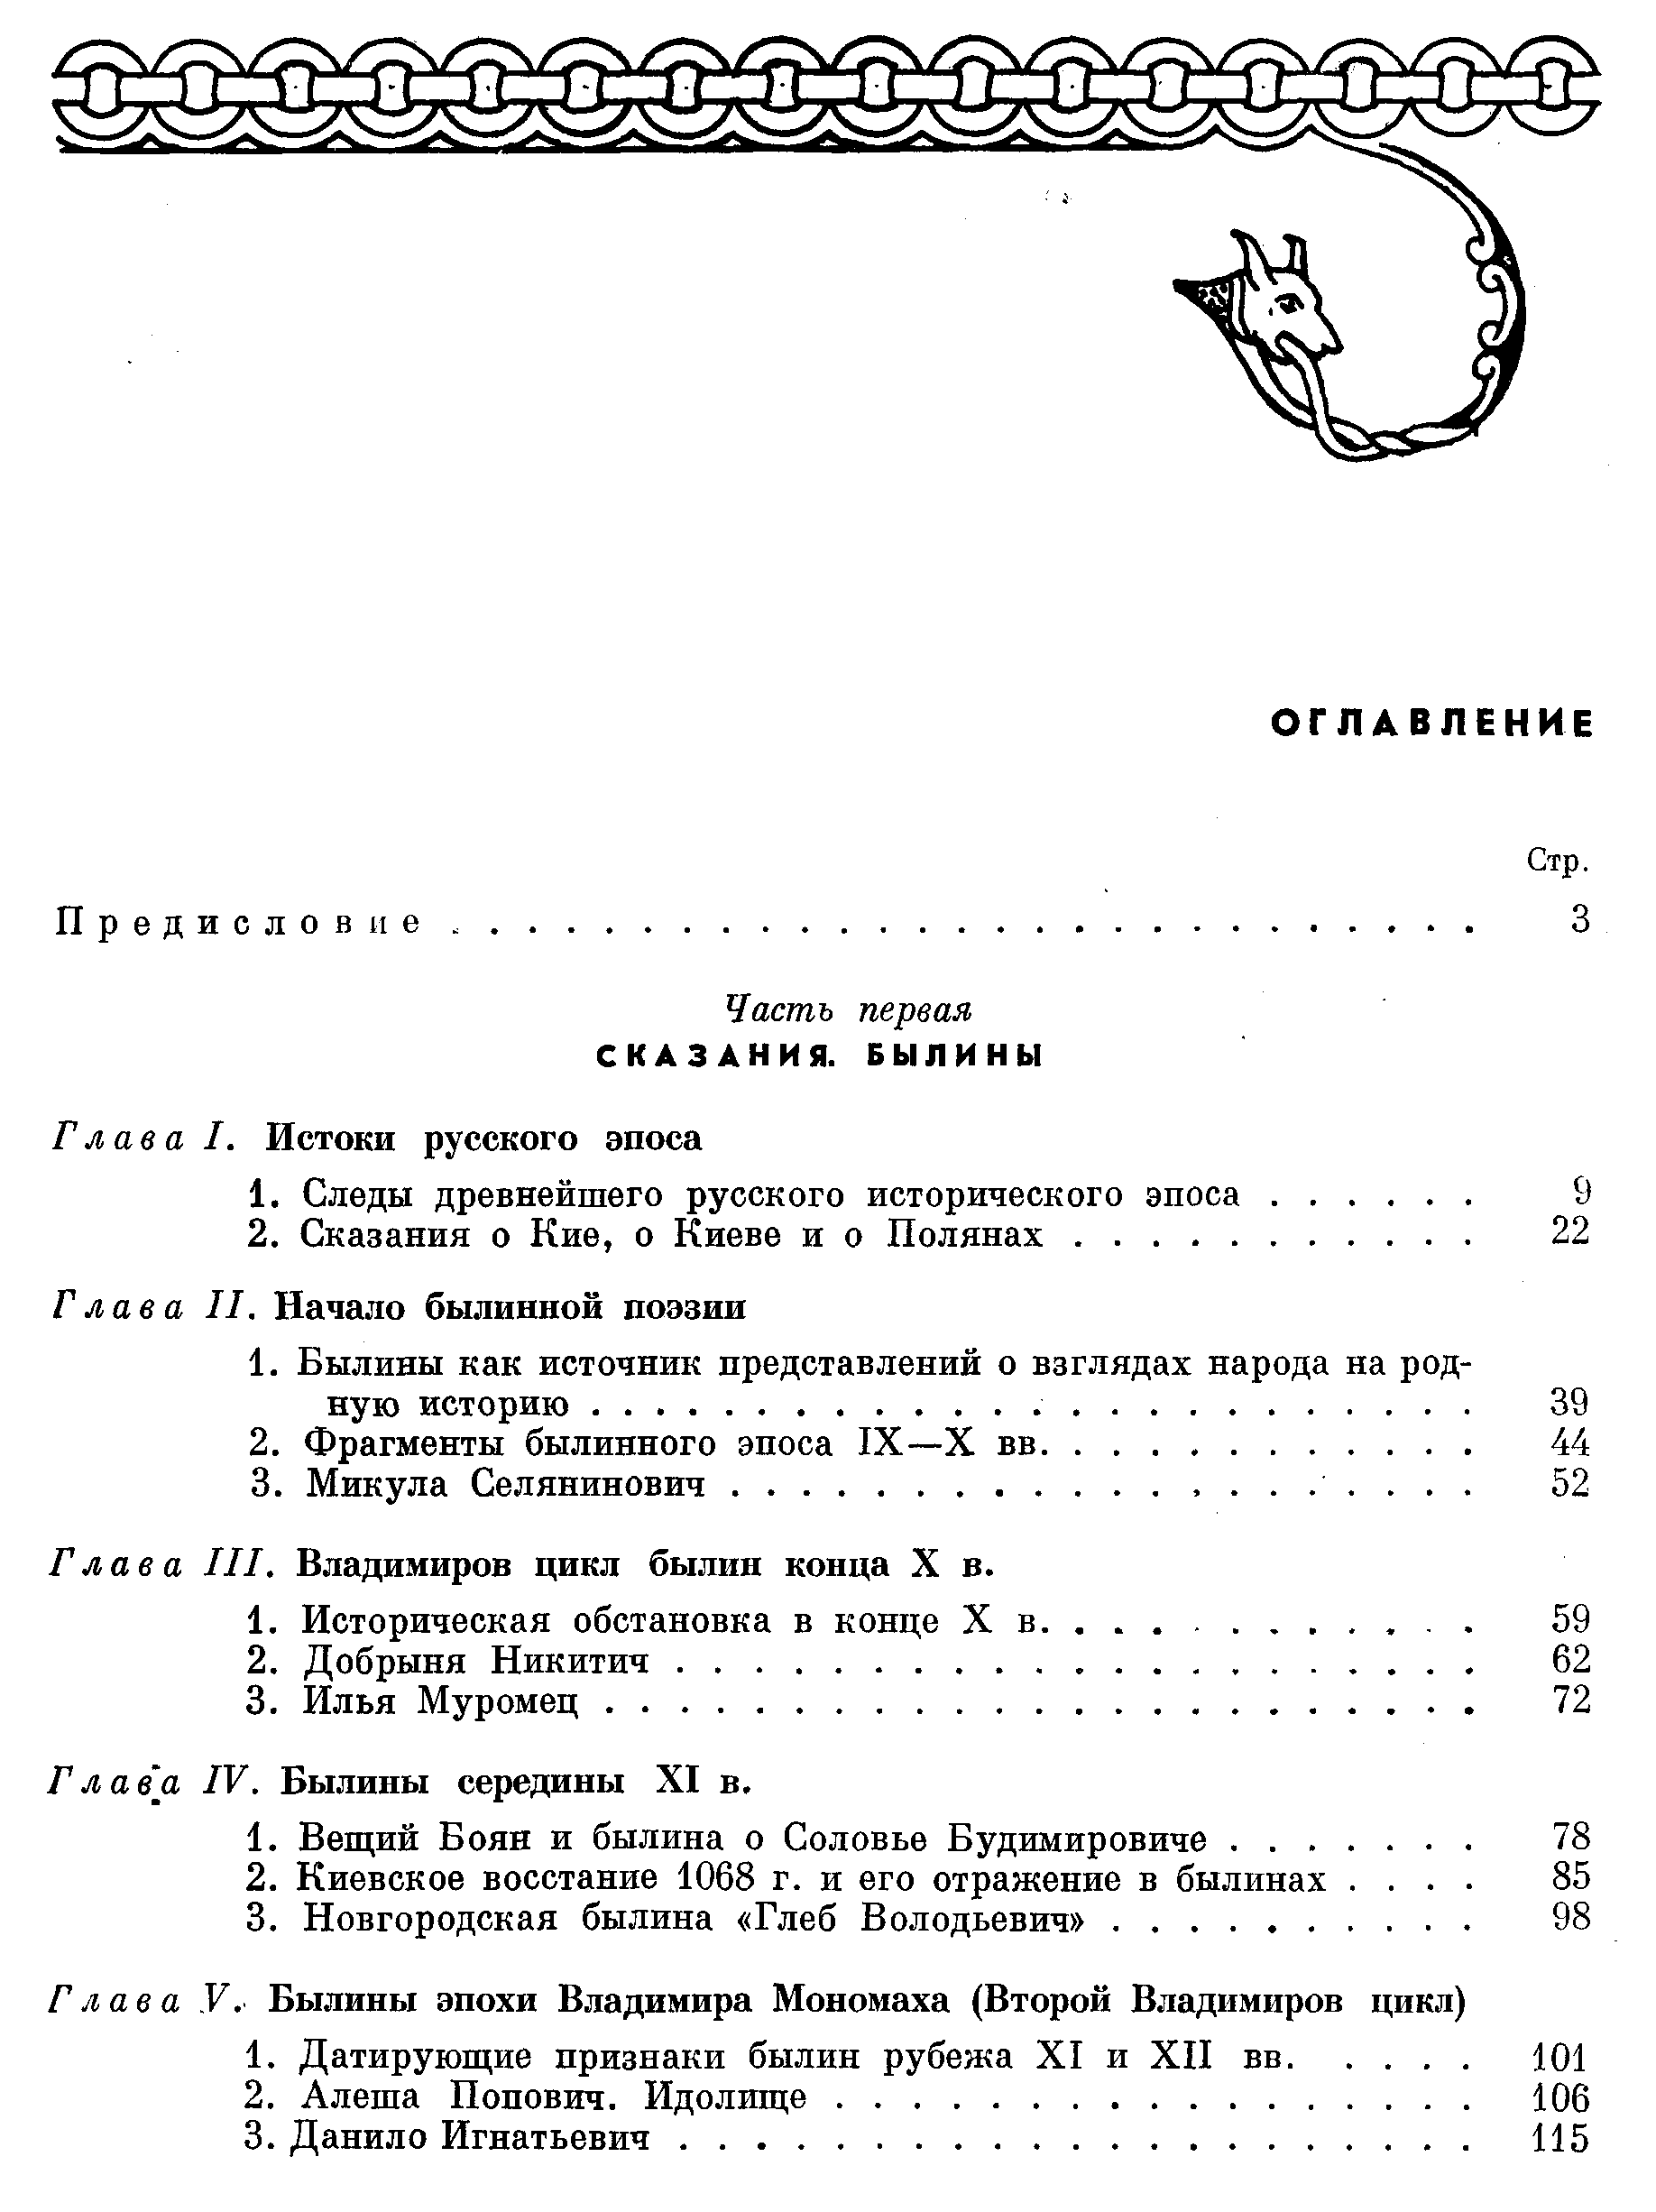 Рыбаков Б. А. Древняя Русь. Сказания, былины, летописи. 1963 г. 